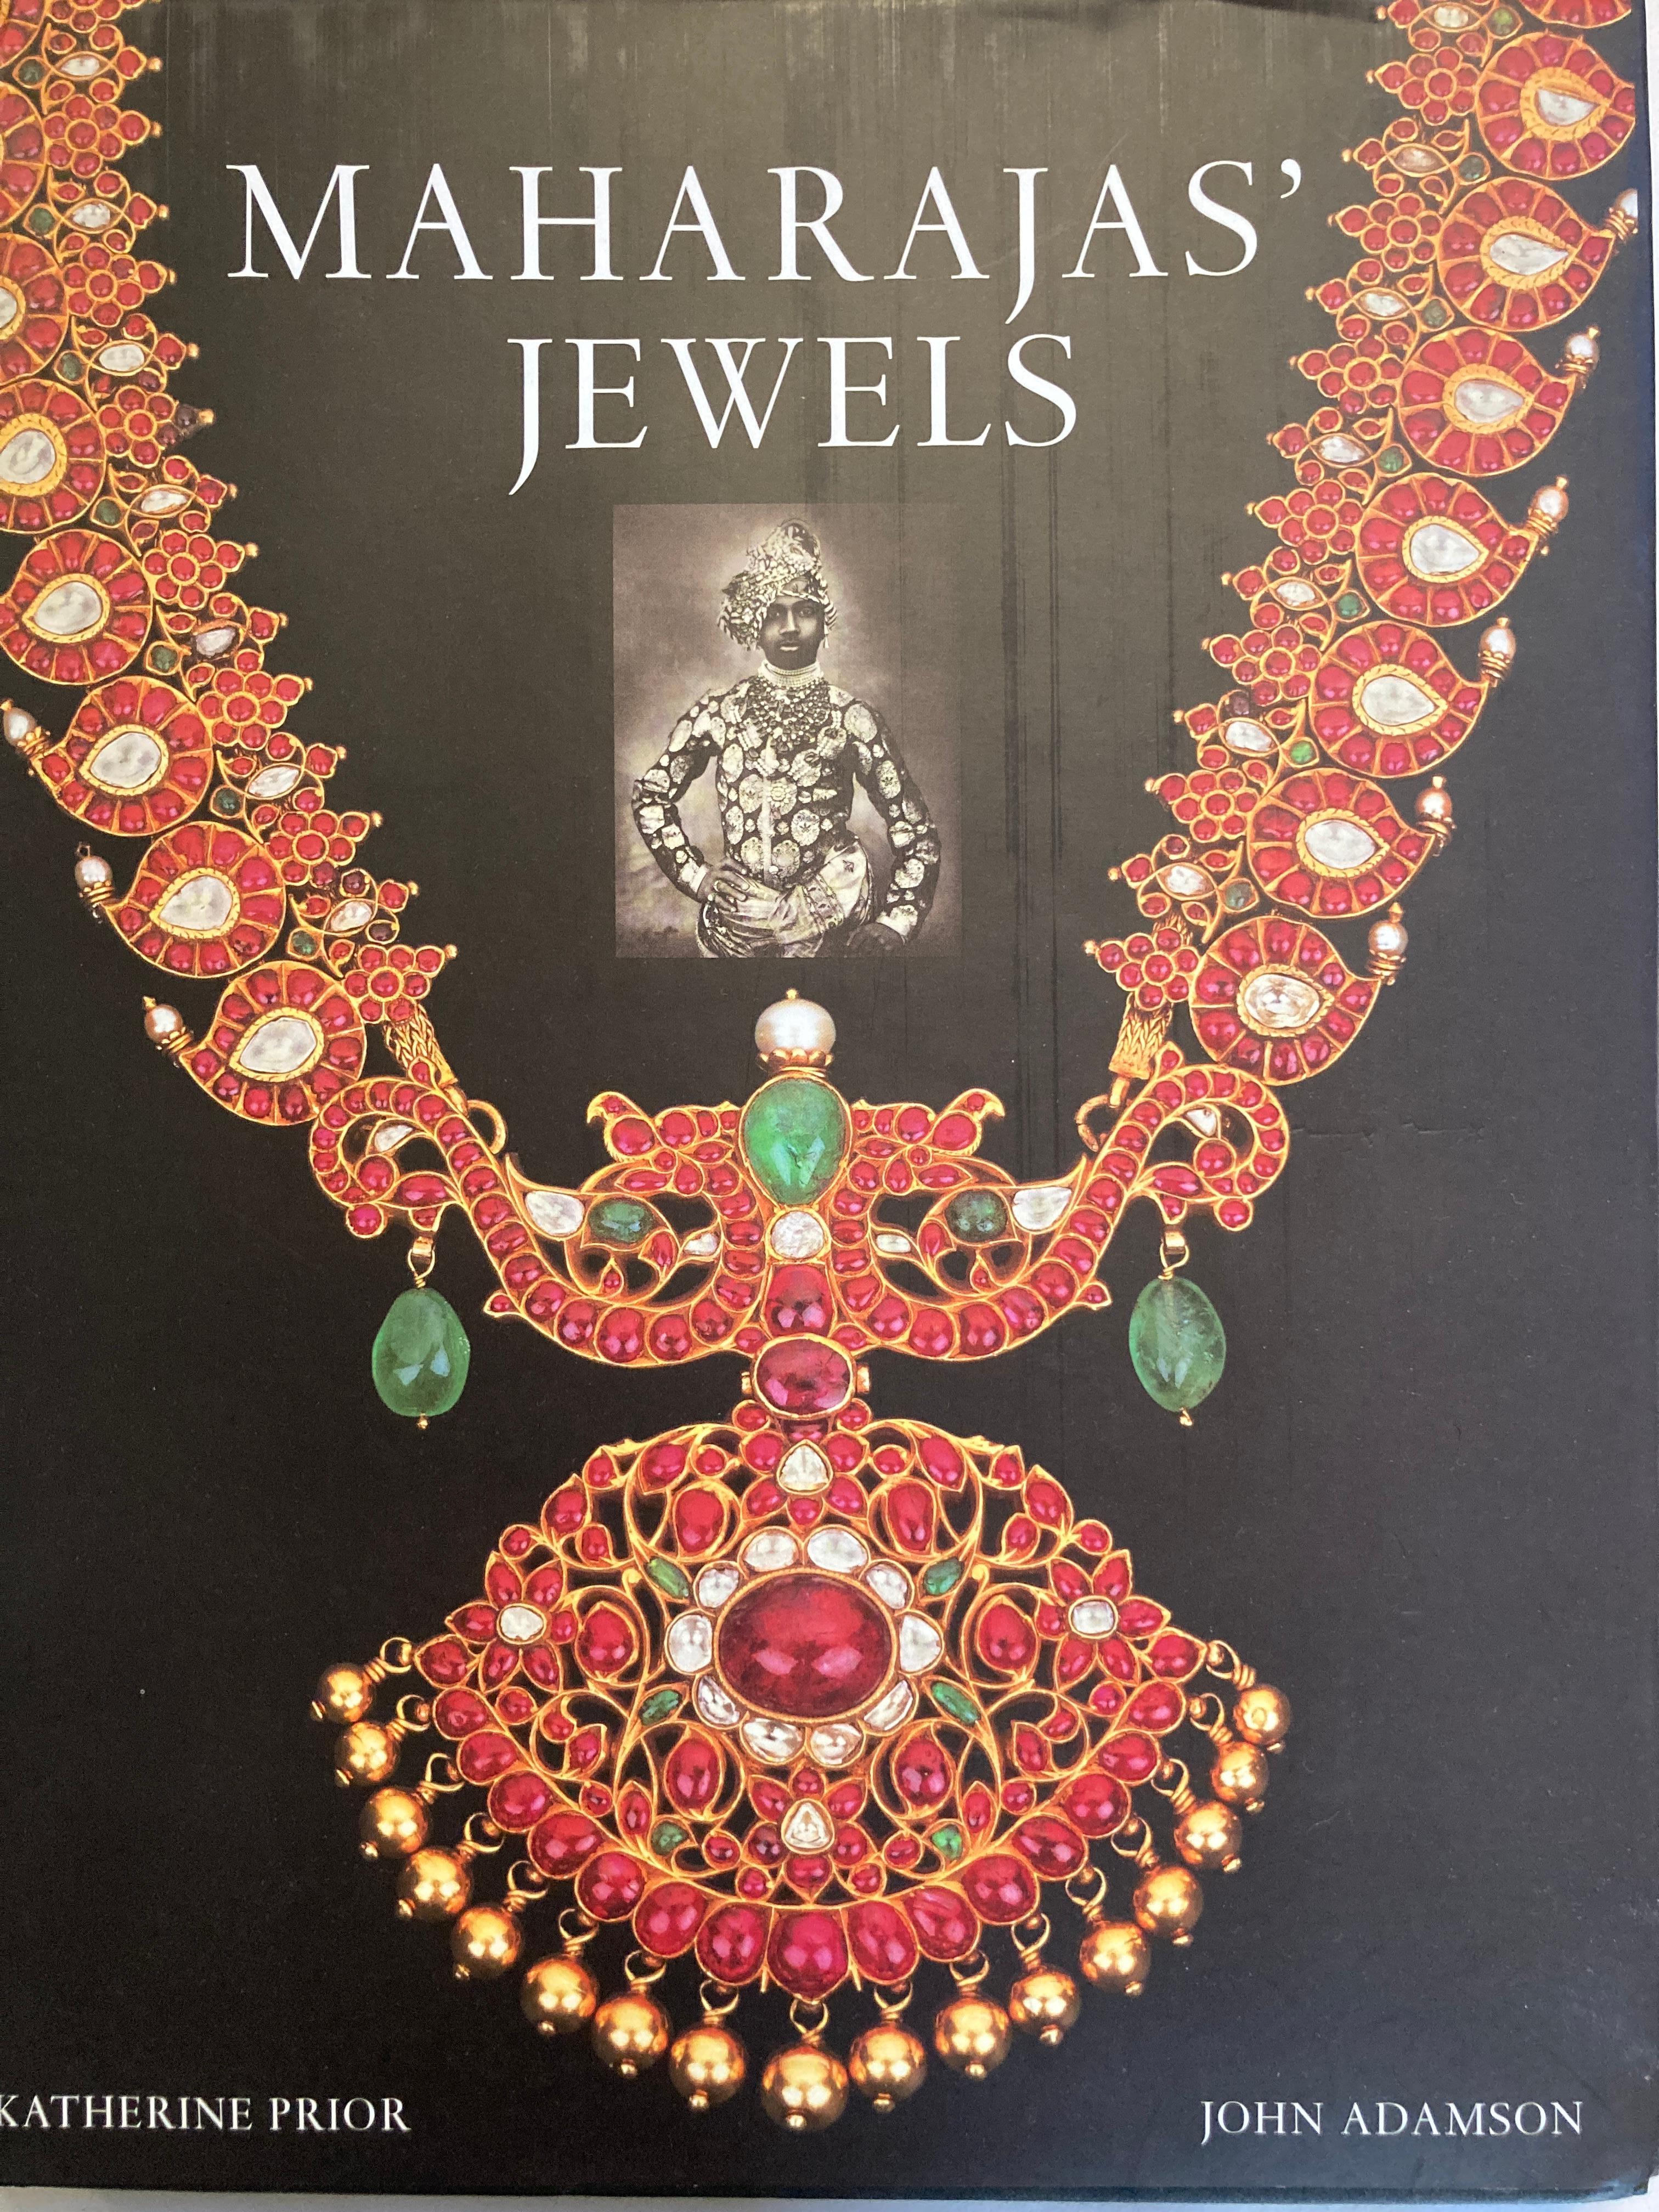 Les histoires des princes indiens et de leurs bijoux et pierres précieuses sont réunies dans ce récit illustré qui retrace l'ascension et la chute des principales maisons royales de l'Inde à travers les fortunes dramatiques de leurs joyaux de la